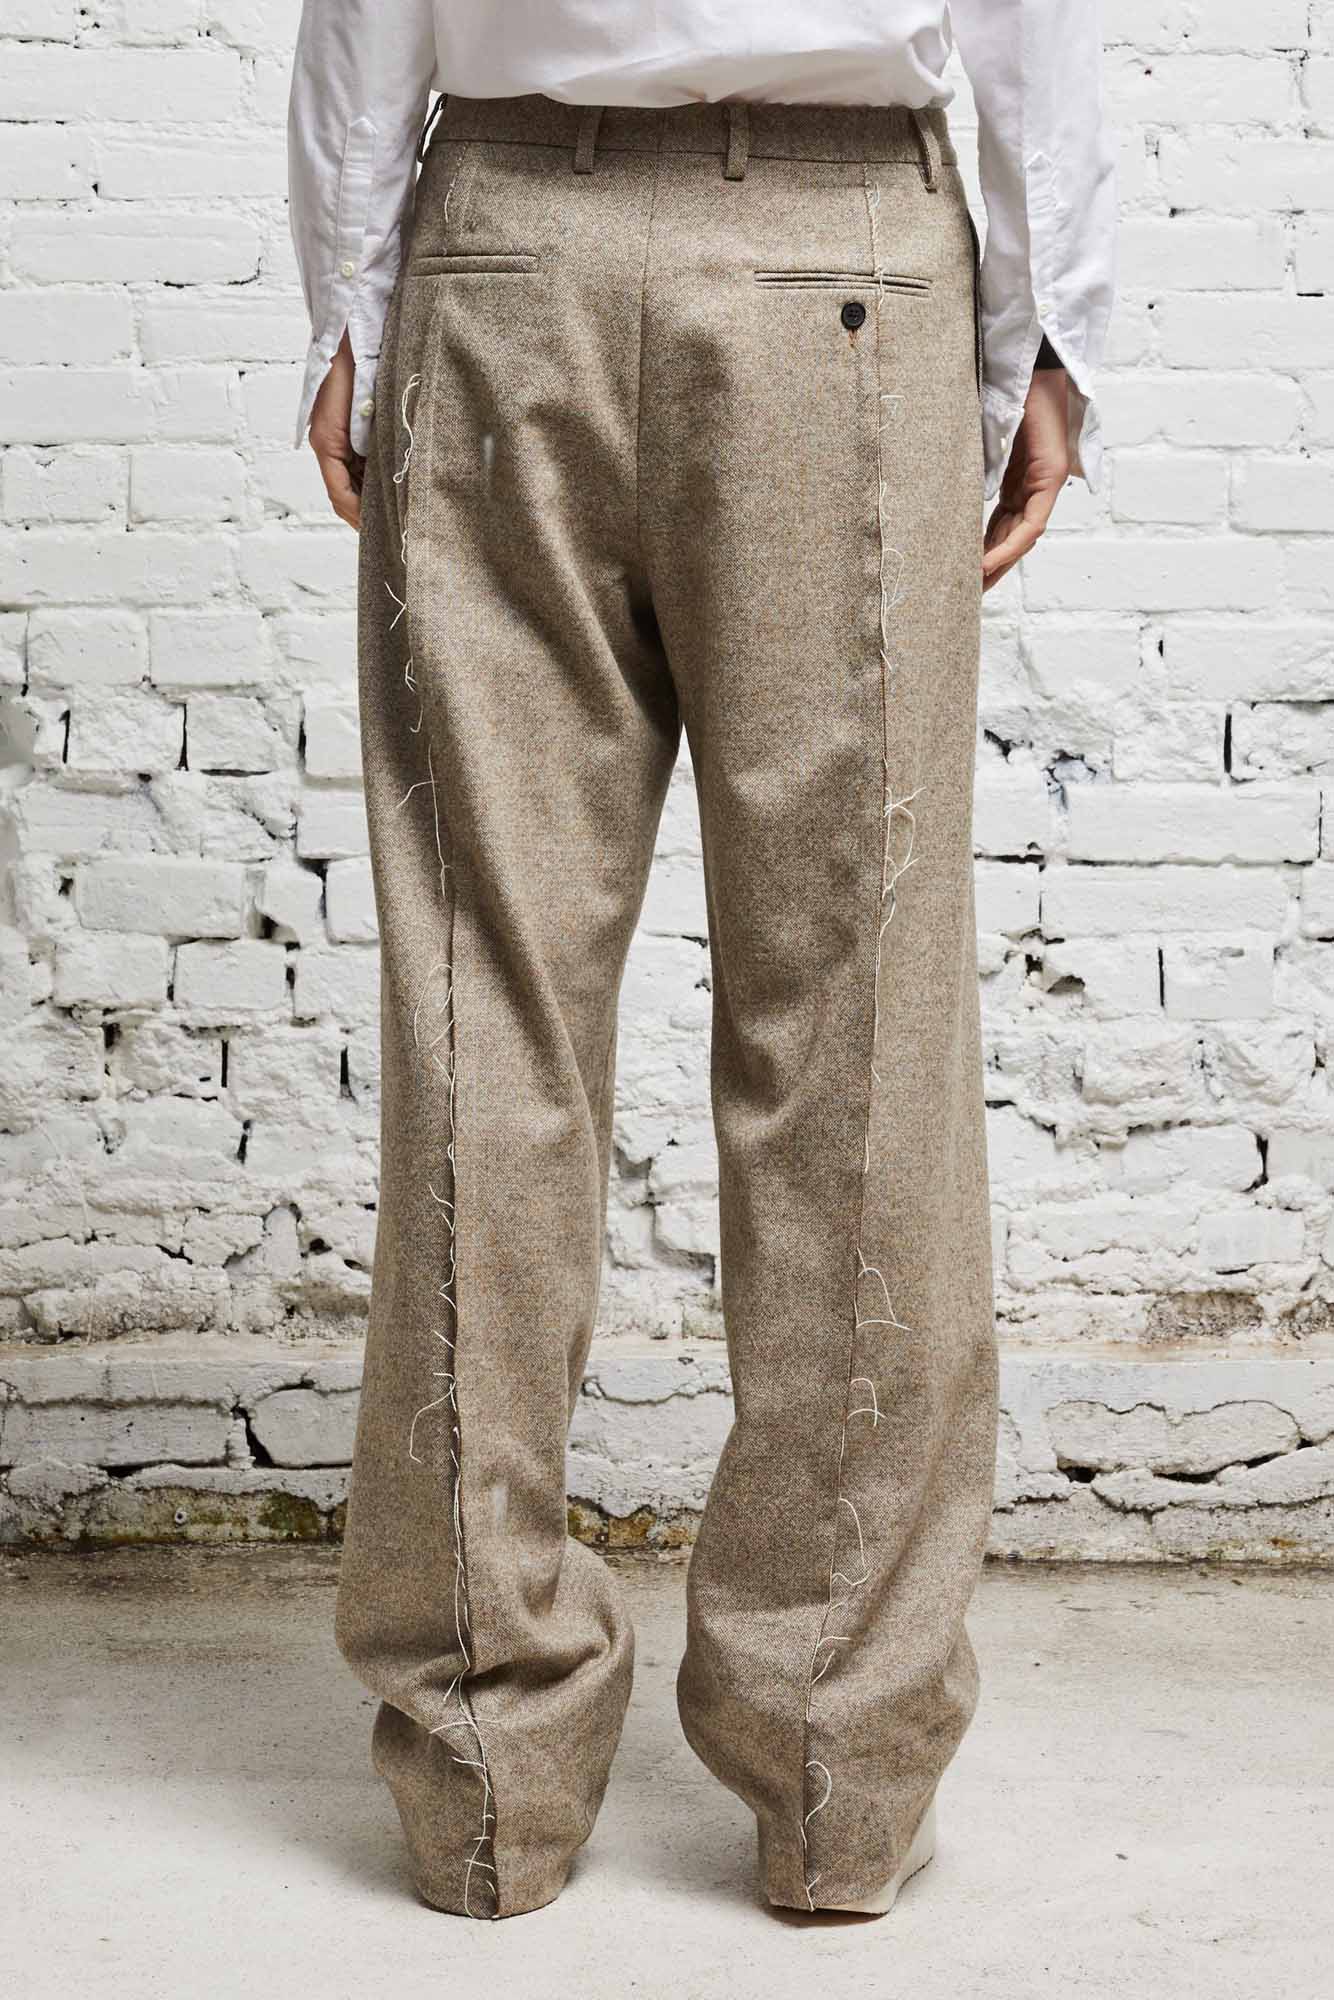 Women's Pants & Shorts | R13 Denim Official Site